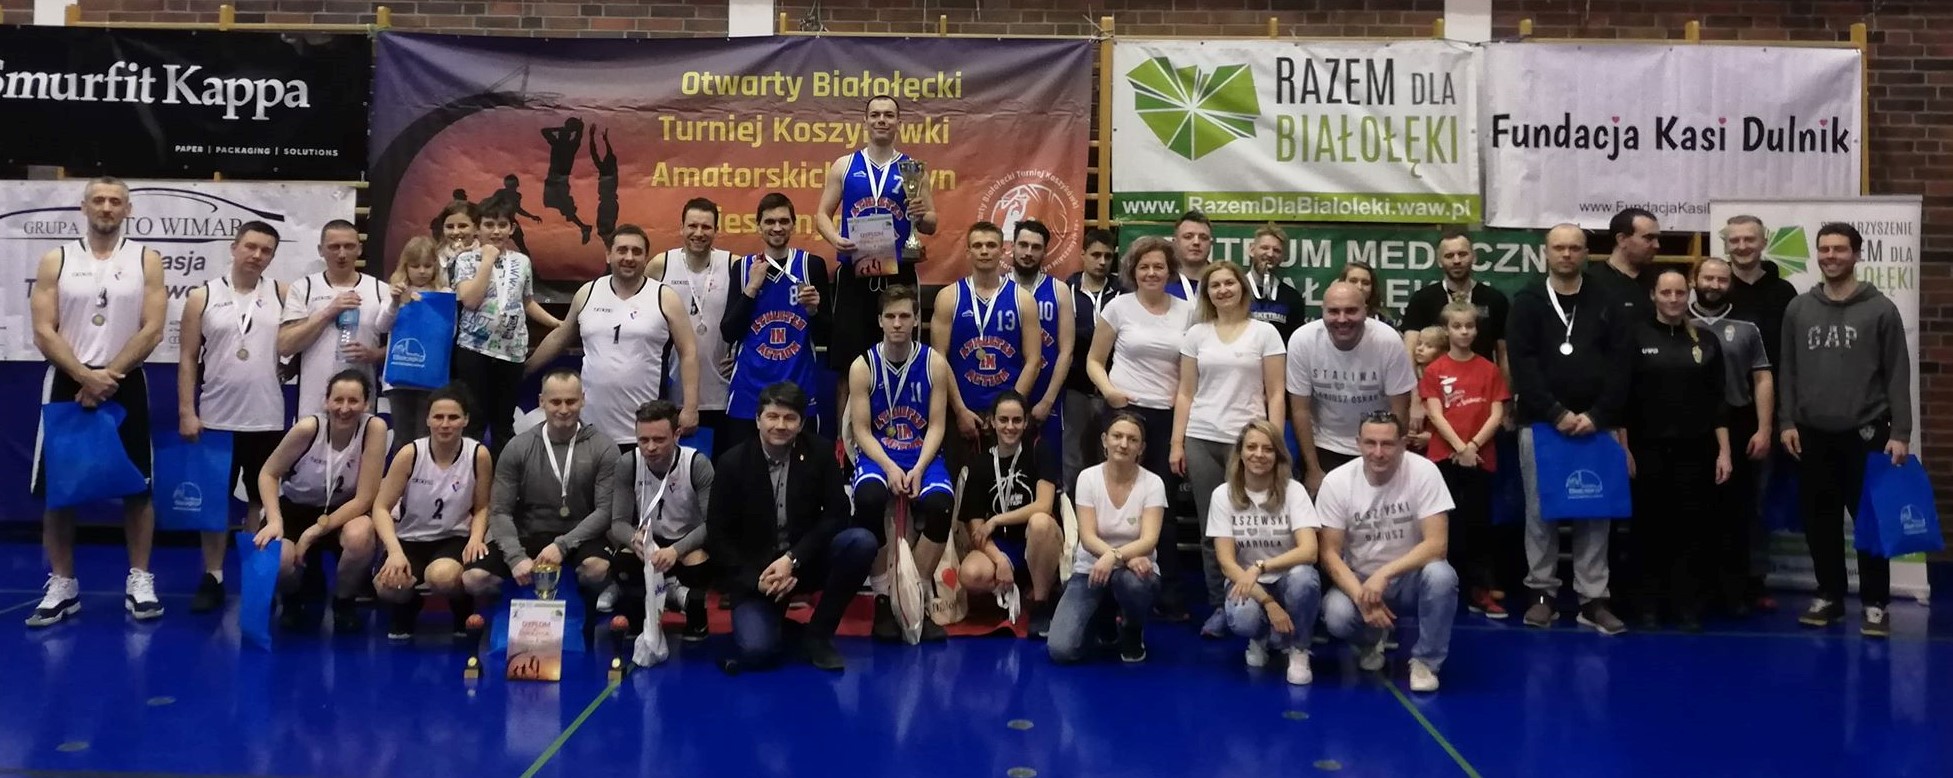 III Otwarty Białołęcki Turniej Koszykówki Amatorskich Drużyn Mieszanych 18+ [FOTORELACJA]